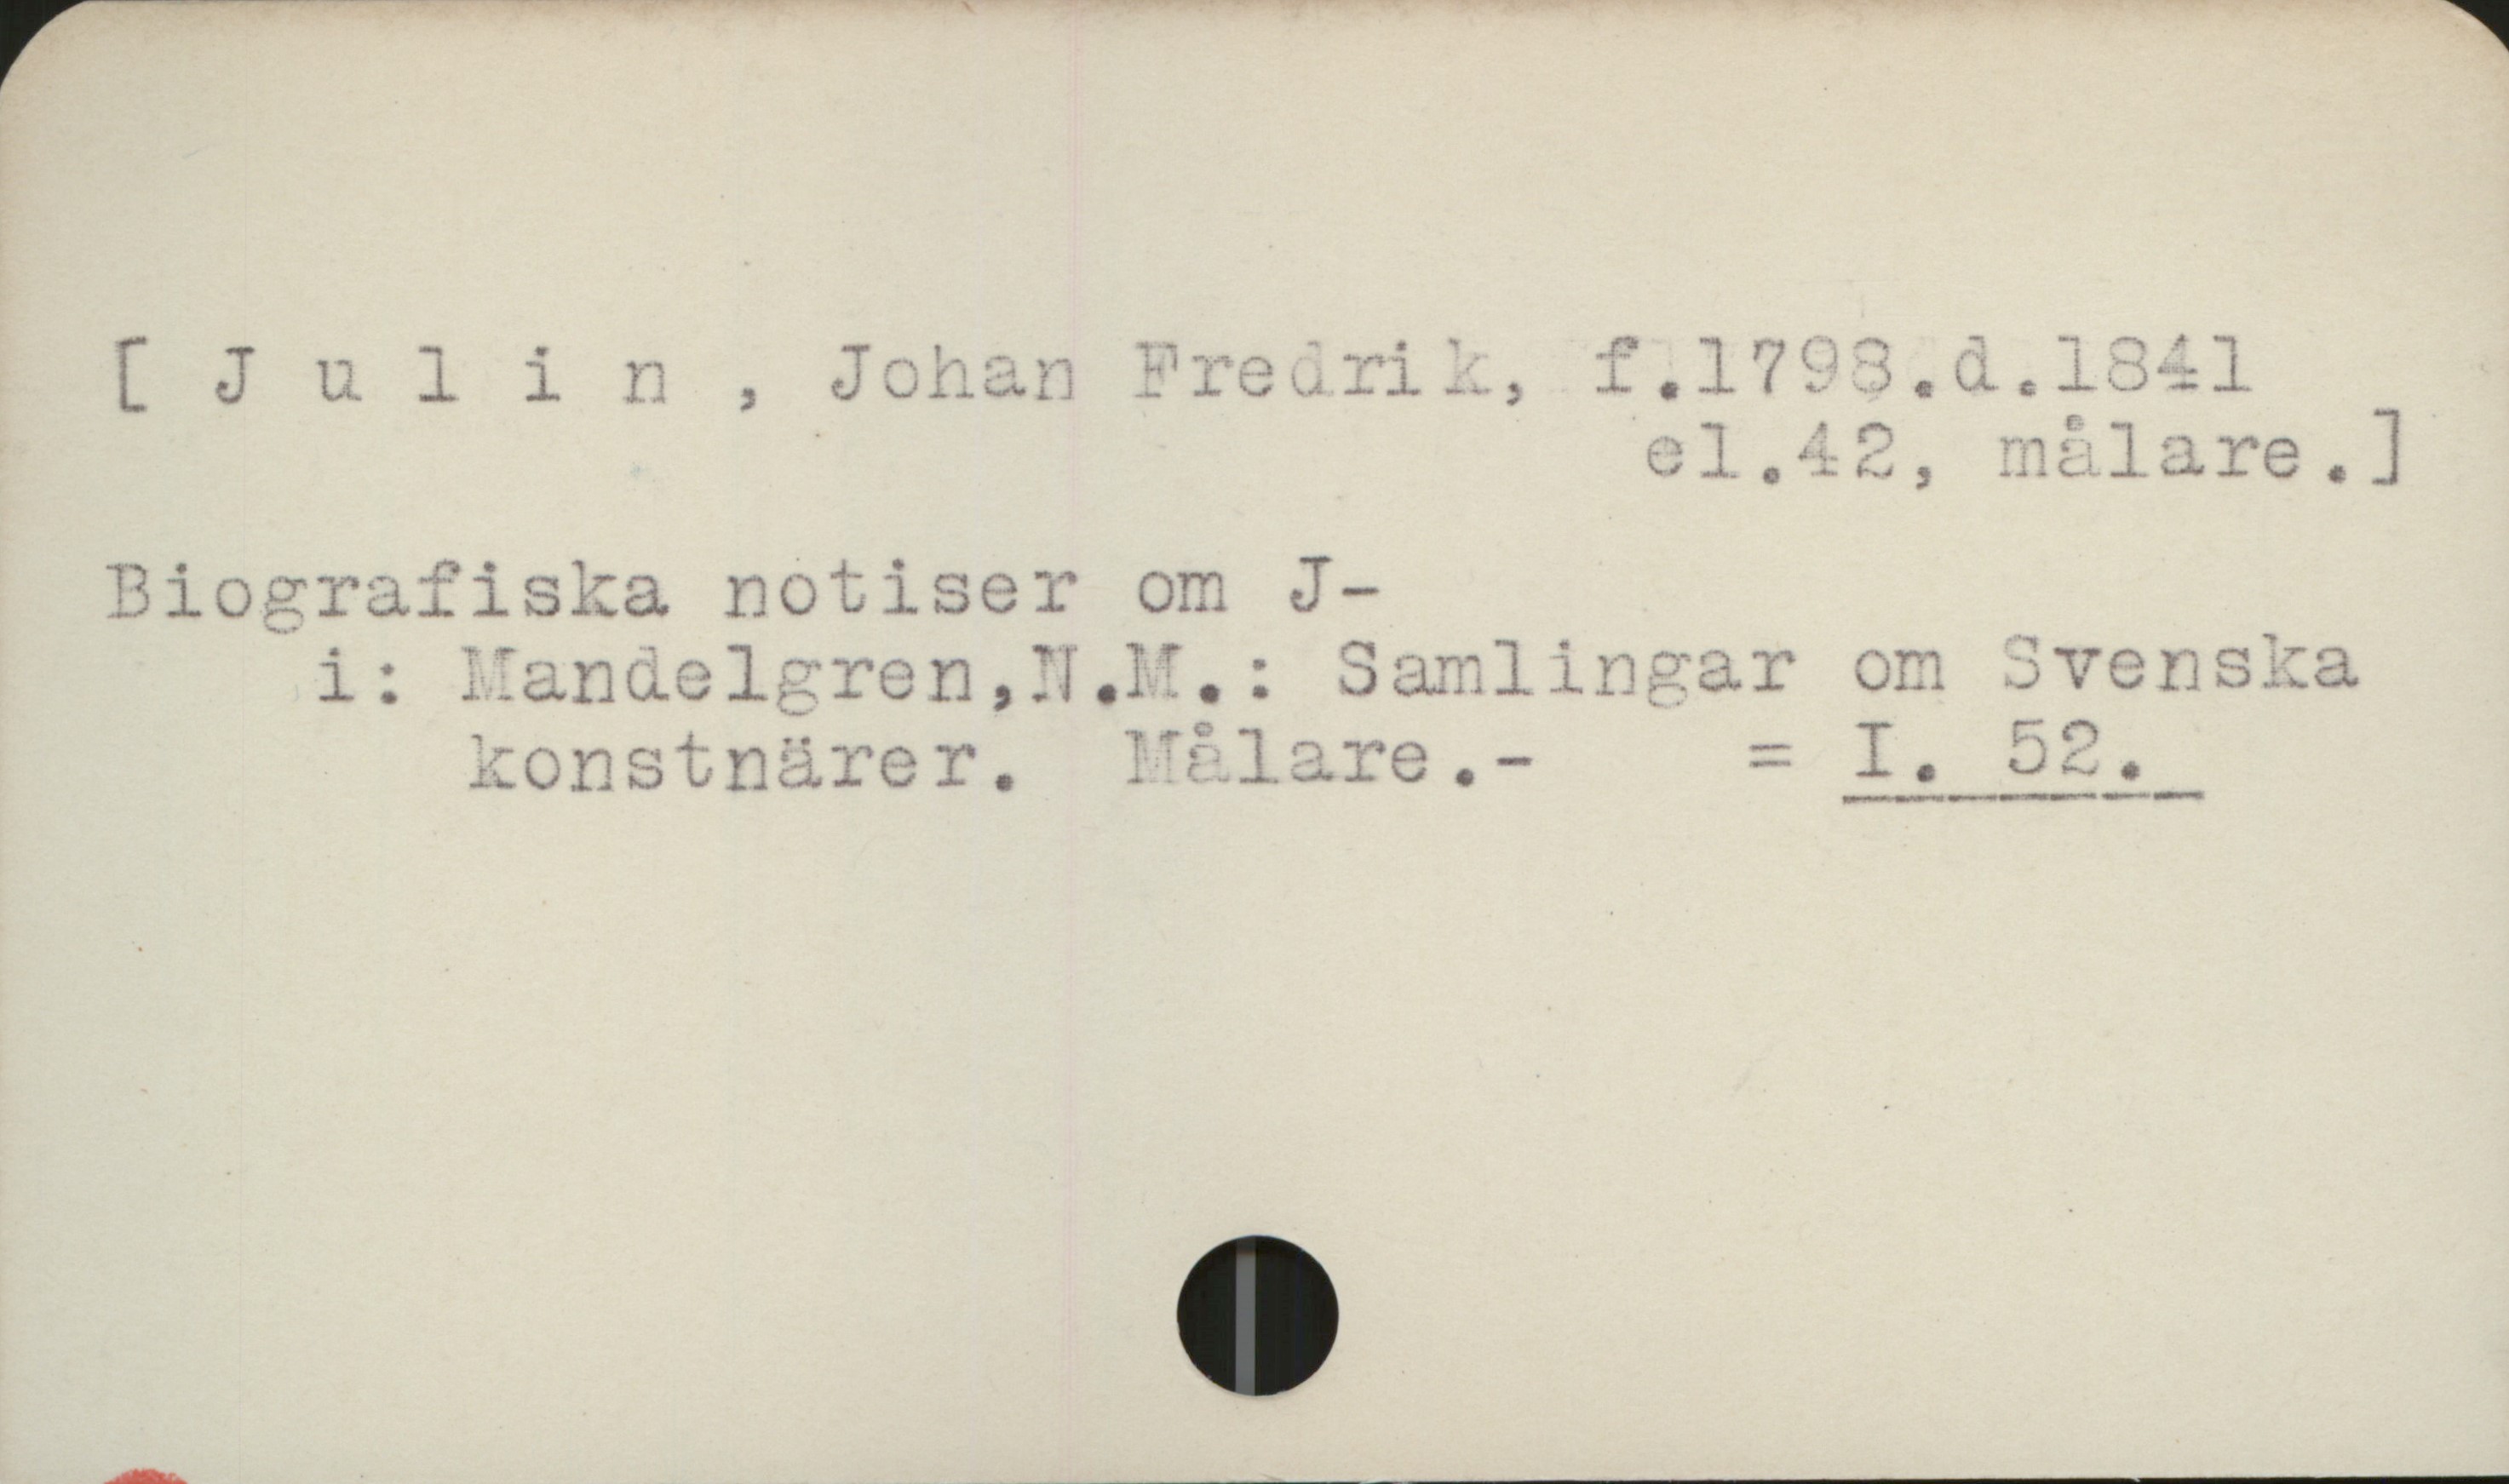 Julin, Johan Fredrik (1798-1843) [ Julin, Johan Fredrik, f. 1798. d. 1841 
                                        el. 42, målare]

Biografiska notiser om J.
   i: Mandelgren, N.M.: Samlingar om Svenska
      konstnärer. Målare                   = I 52